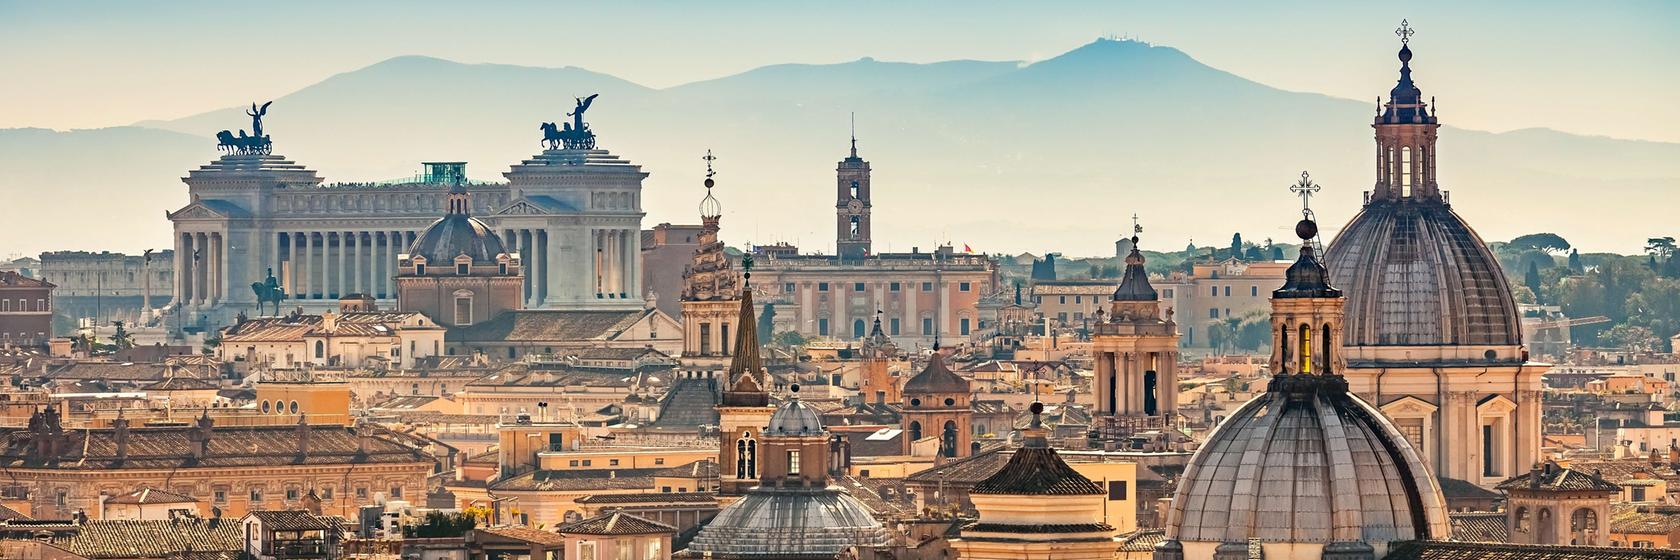 Praktické informace o Římě a okolí